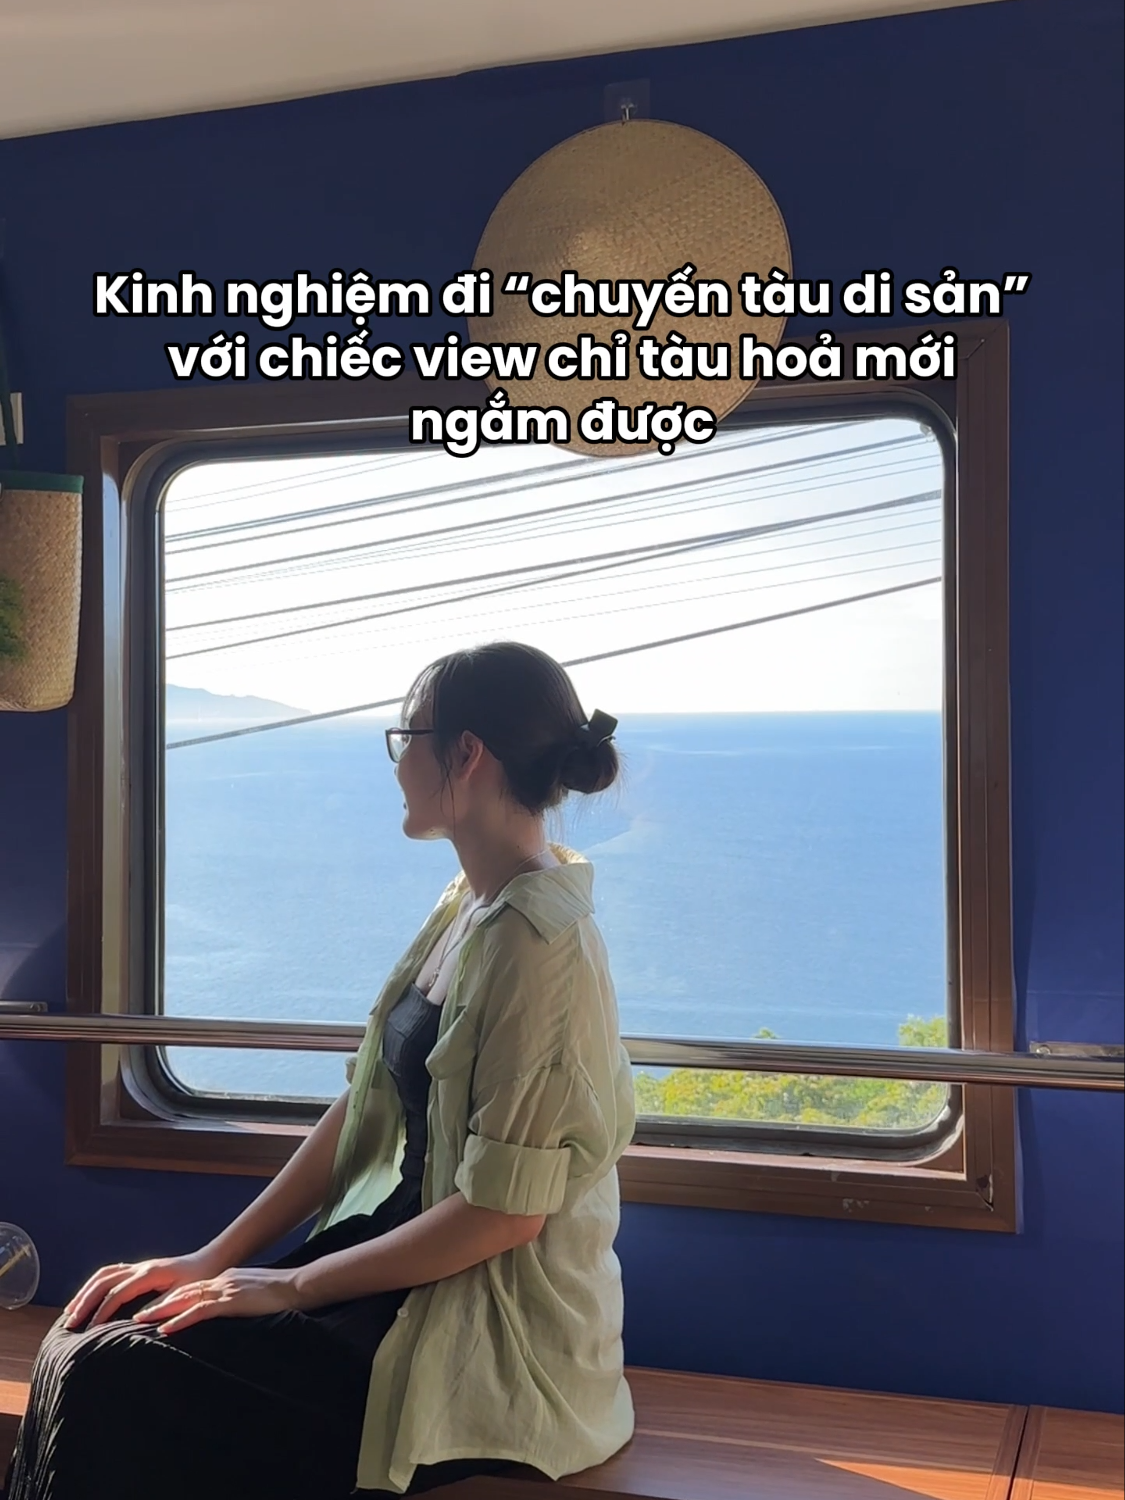 Nếu có dịp đi Huế, Đà Nẵng nhất định phải thử 1 lần đi trên chuyến tàu di sản đặc biệt này nhà cả nhà ơi 💖 Ngắm đèo Hải Vân và vịnh Lăng Cô đẹp mê mẩn luôn đó!!! #LearnOnTikTok #tiktoktravel #fypシ #dulich #danang #hue #xuhuong #review #travel #viral #tauhoa #train #checkindangang #checkinhue #vietnam #vietnamtoiyeu